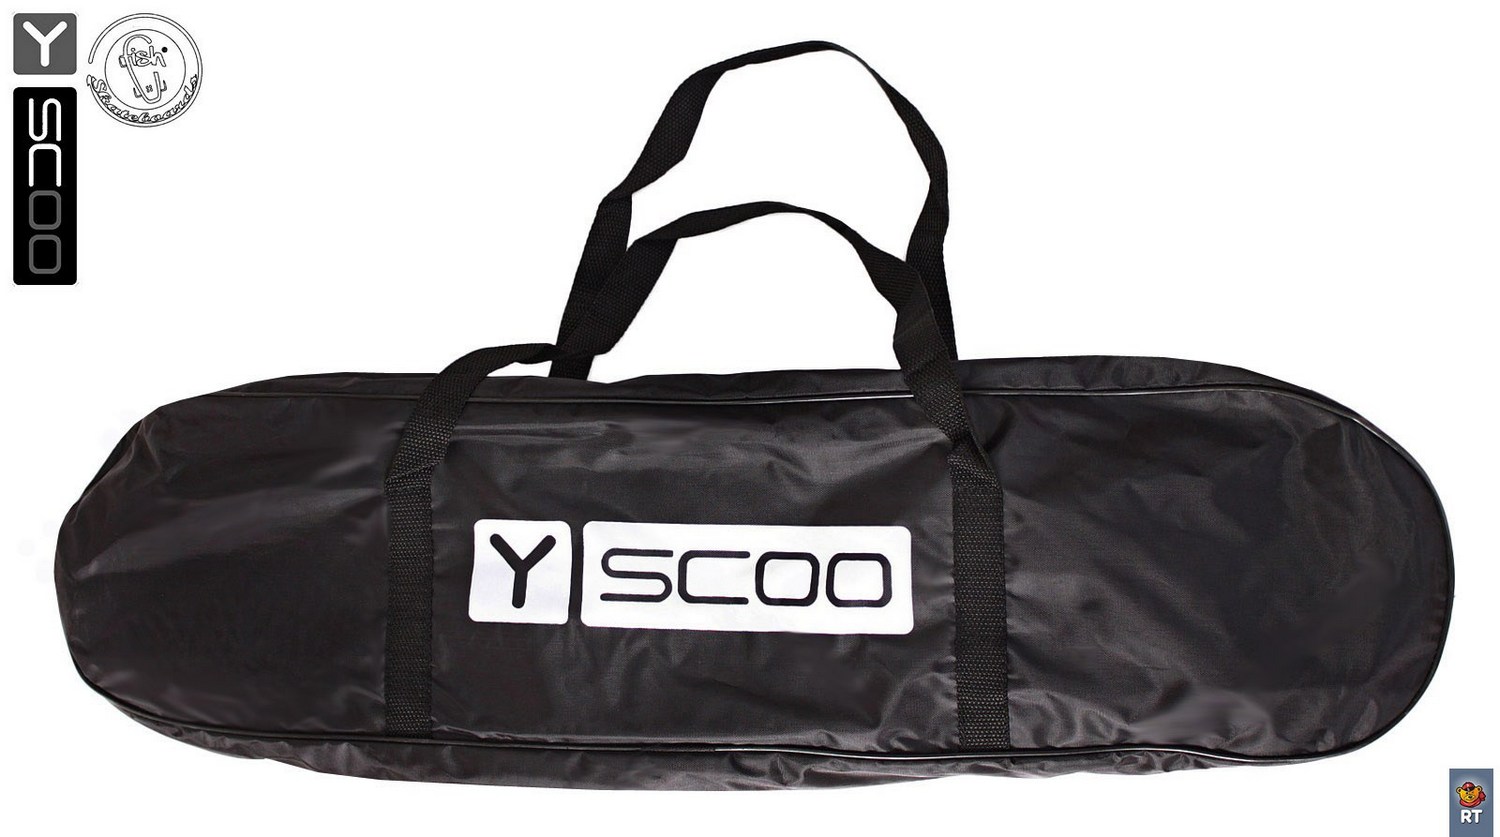 Скейтборд виниловый Y-Scoo Fishskateboard 22" 401-O с сумкой, оранжевый  